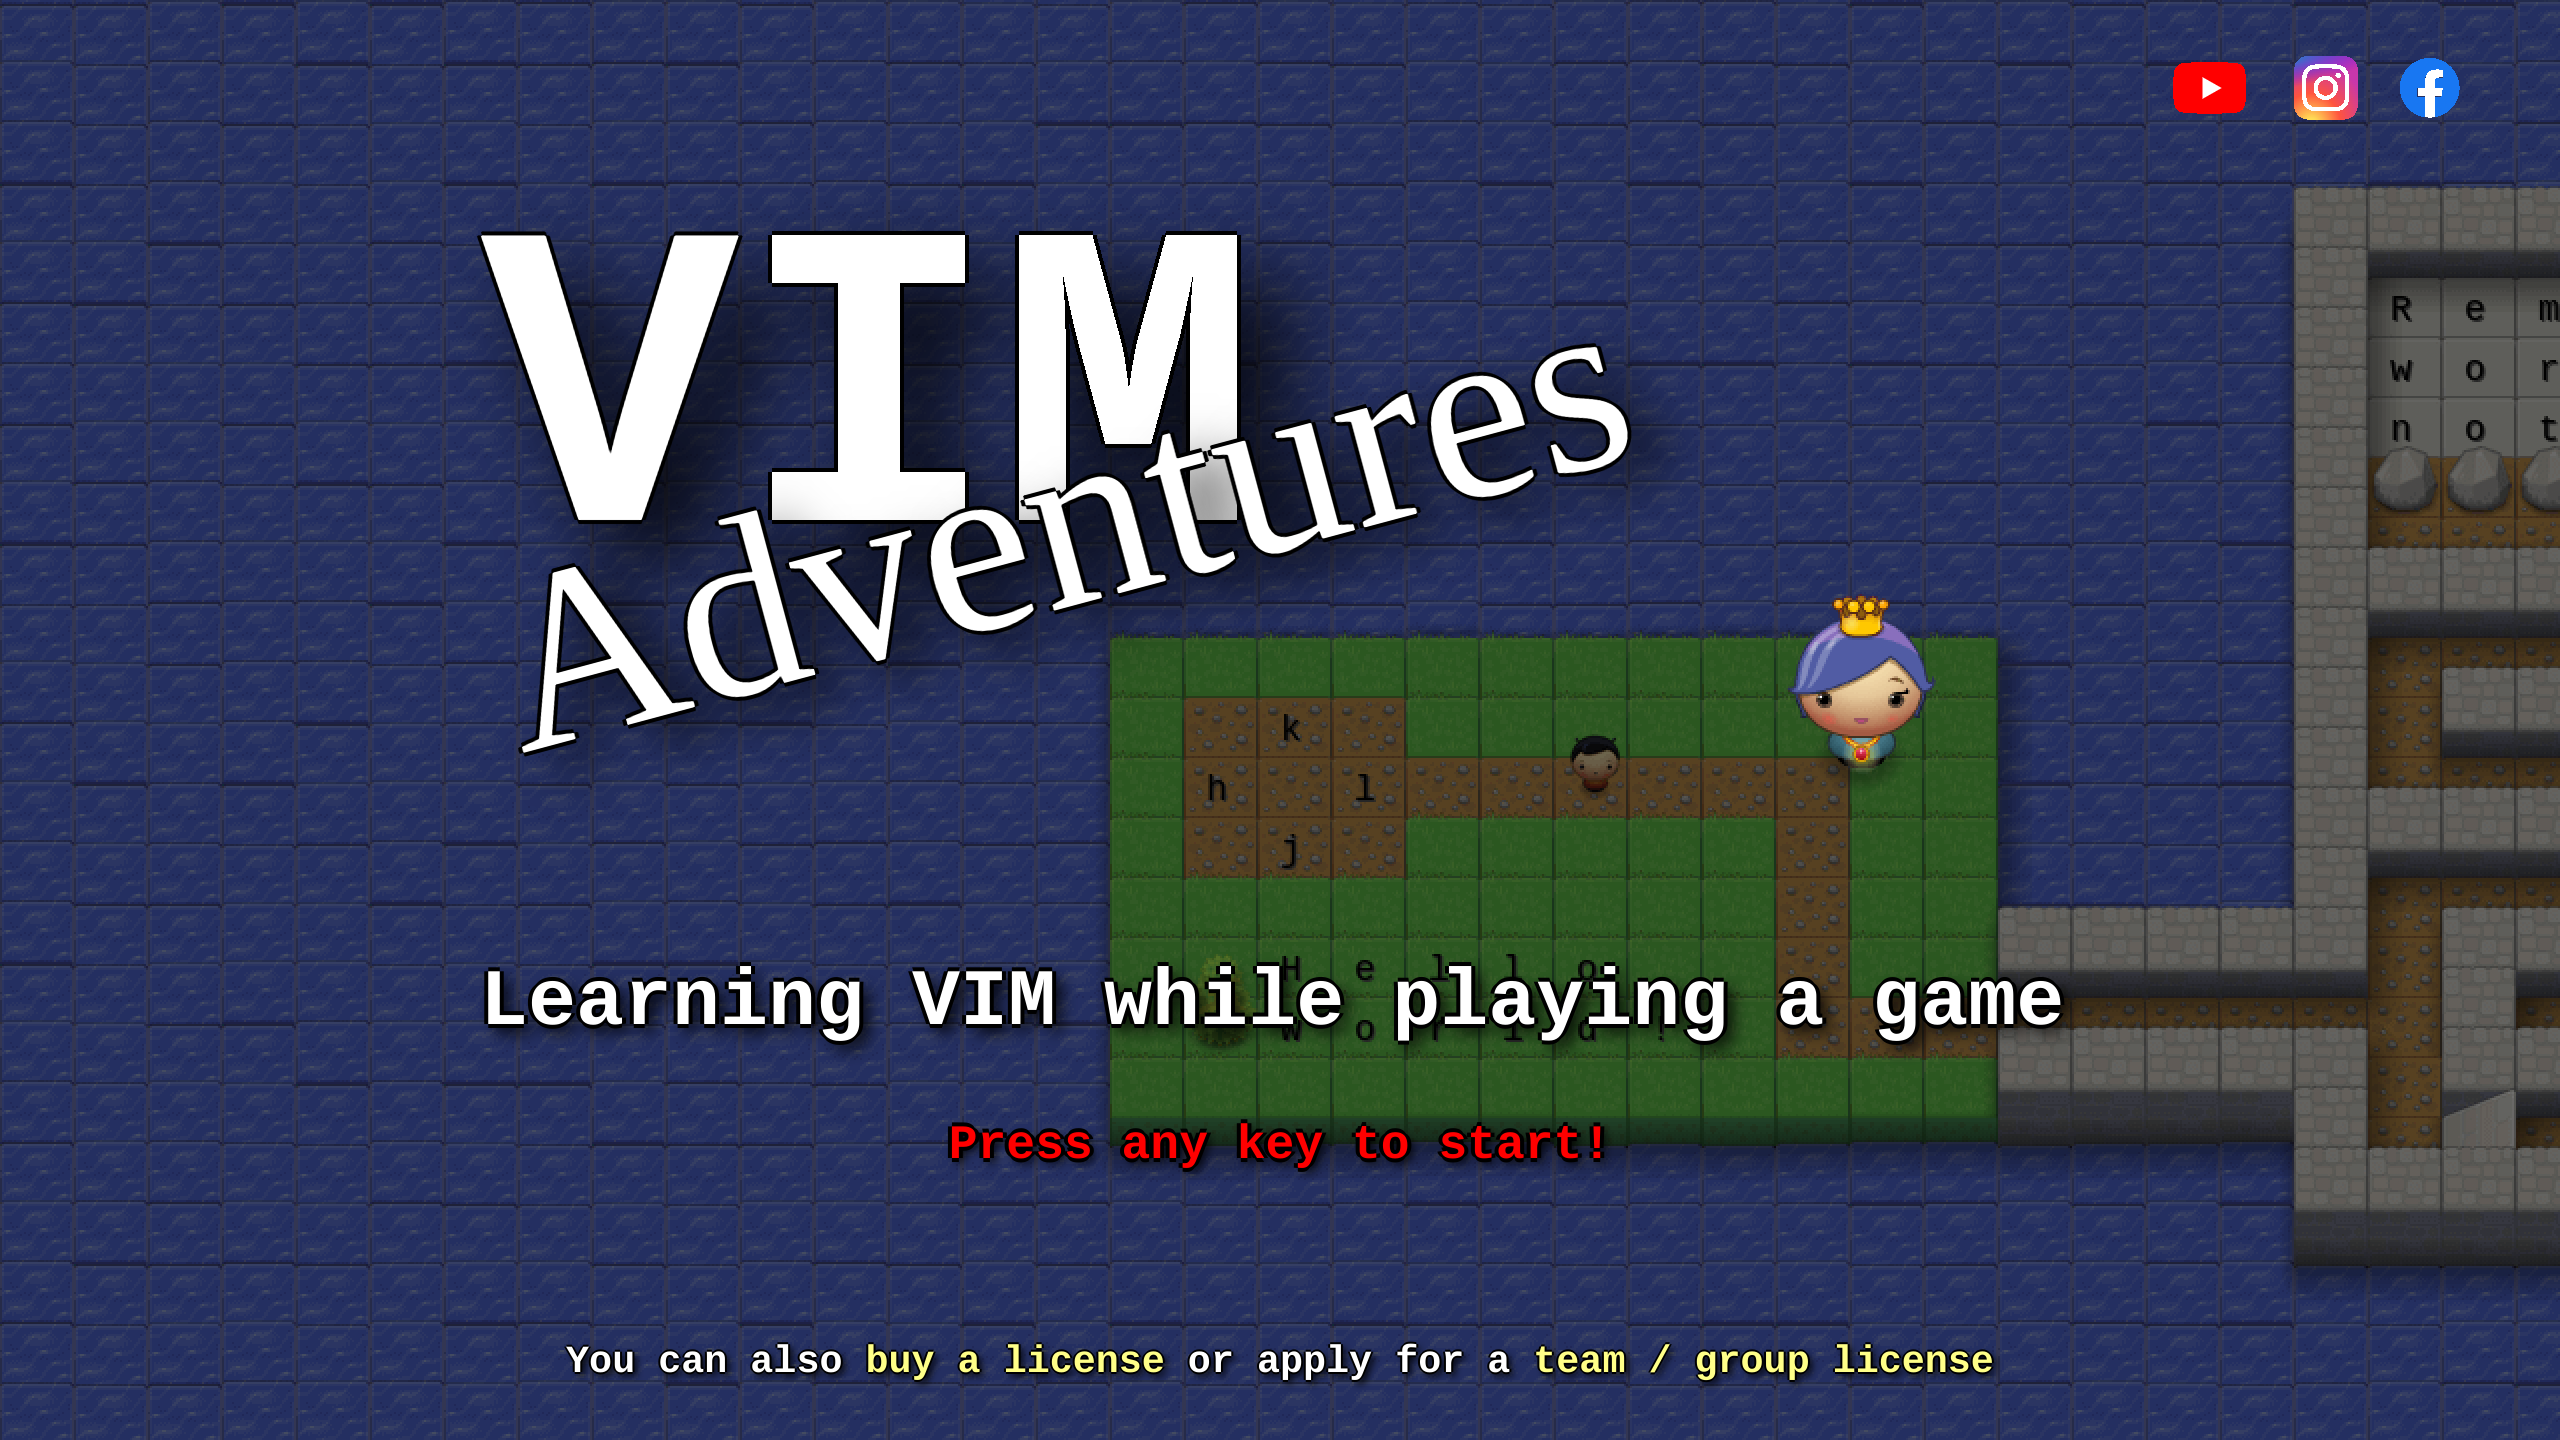 Vim Adventures's website screenshot